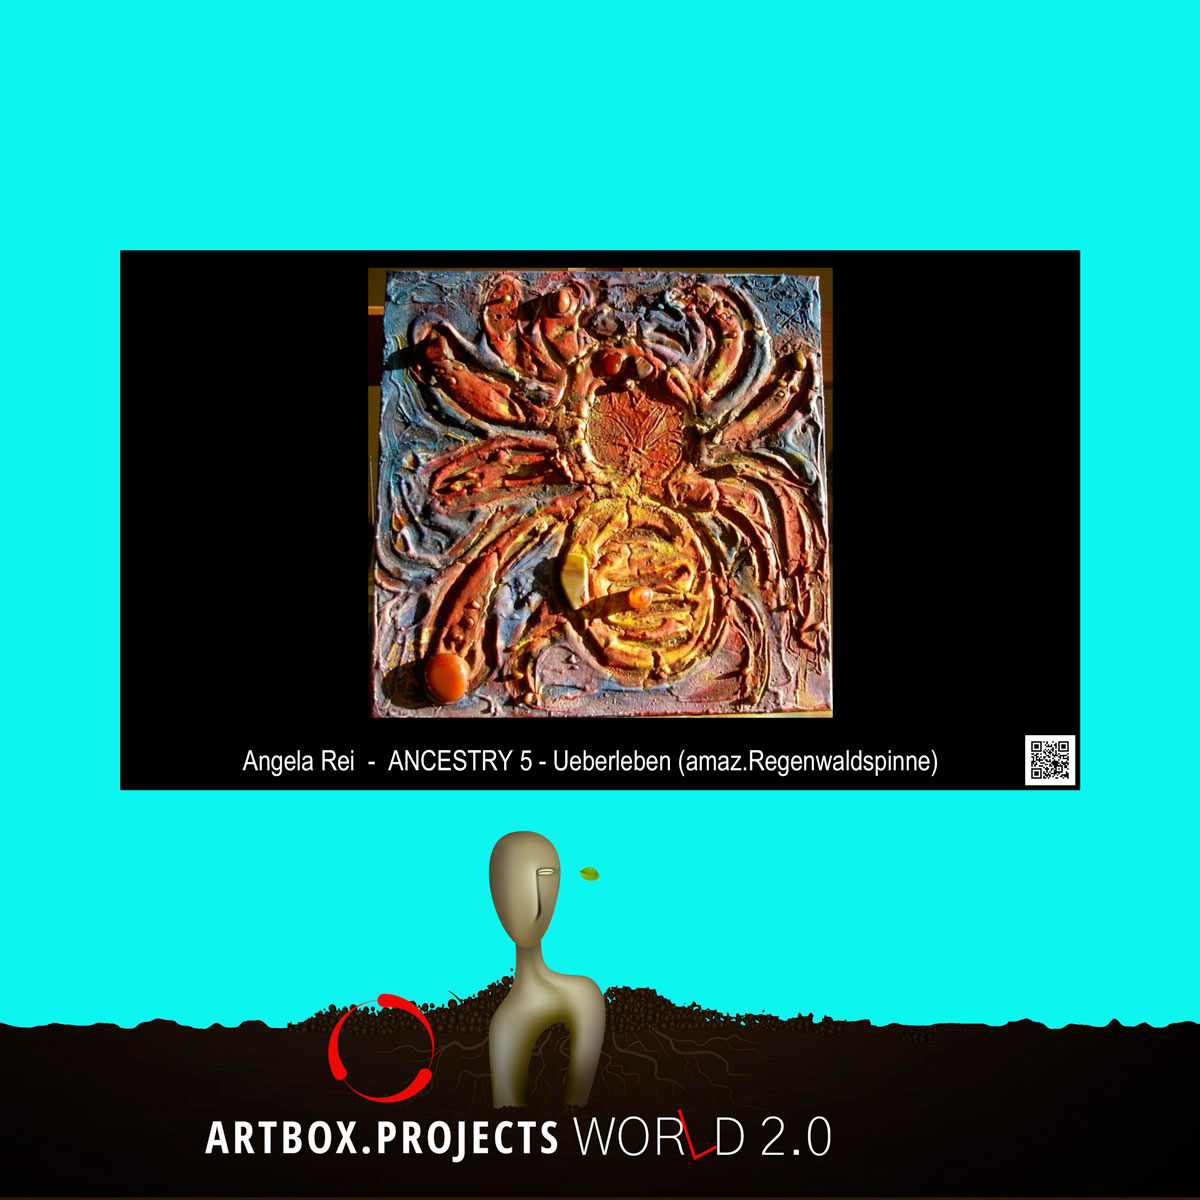 Esposizione Digitale ARTBOX.PROJECT World 2.0 presso la Galleria URBANSIDE, Città di Zurigo, Svizzera dal 1 febbraio - 4 marzo 2022